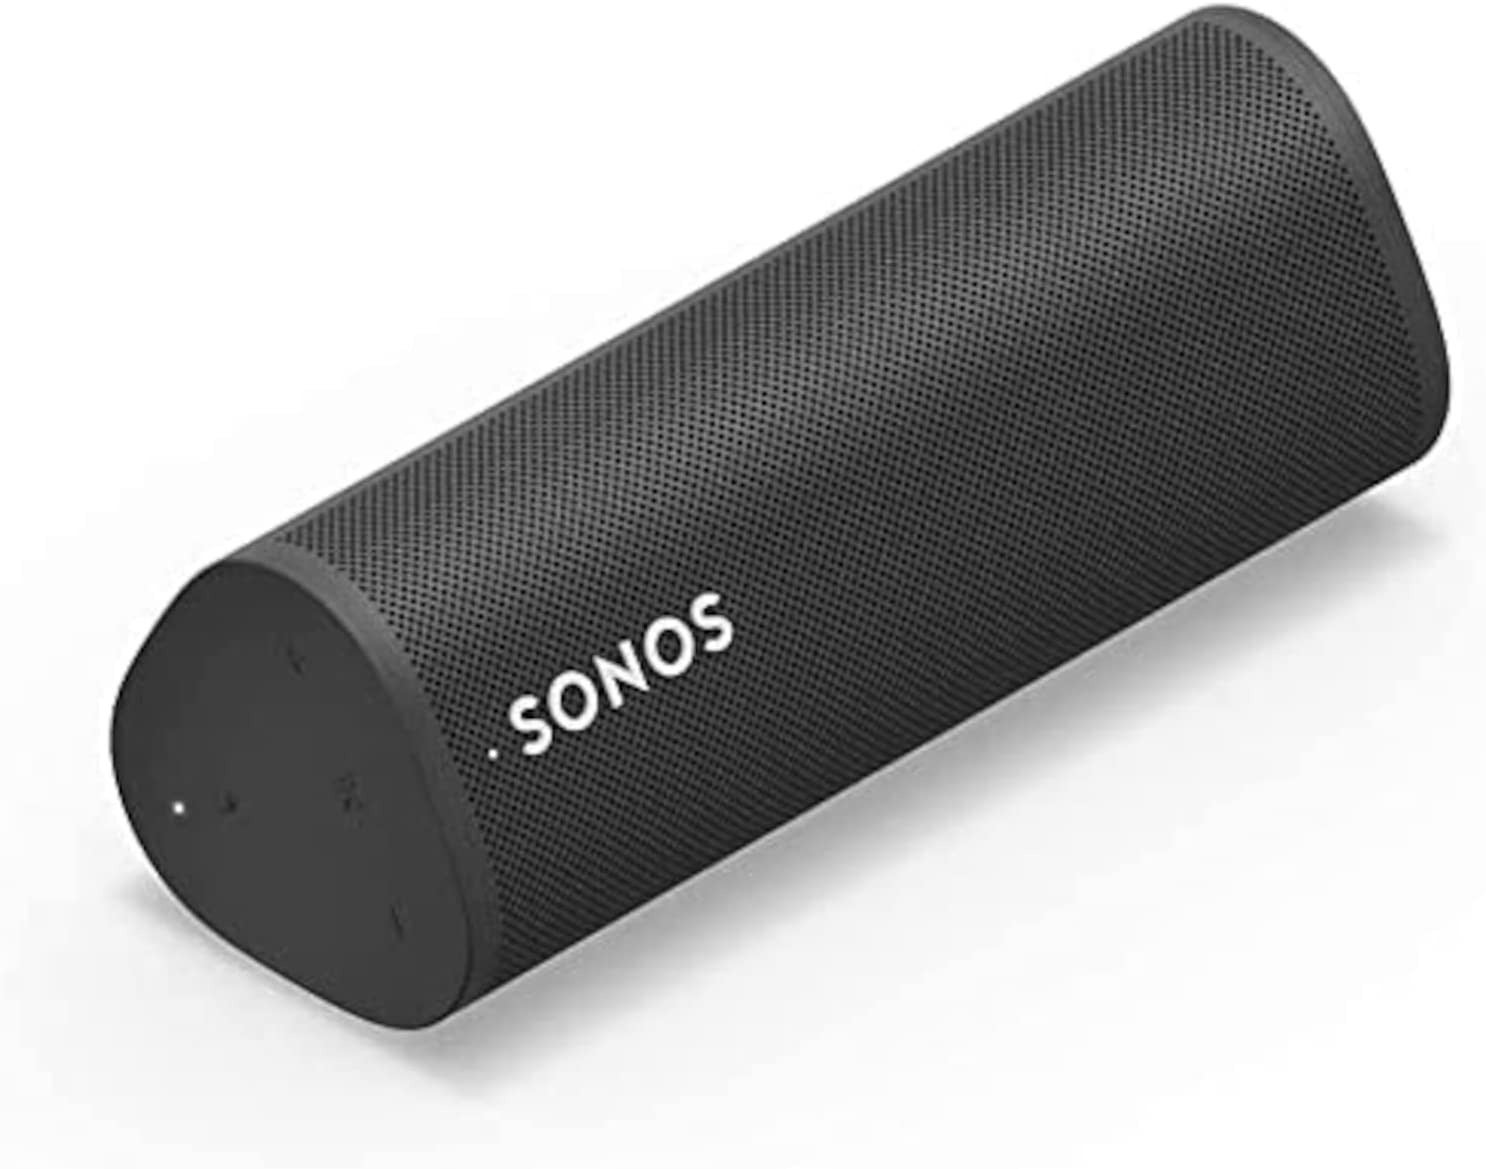 The Sonos Roam waterproof speaker in black. - Best waterproof Bluetooth speakers for summer